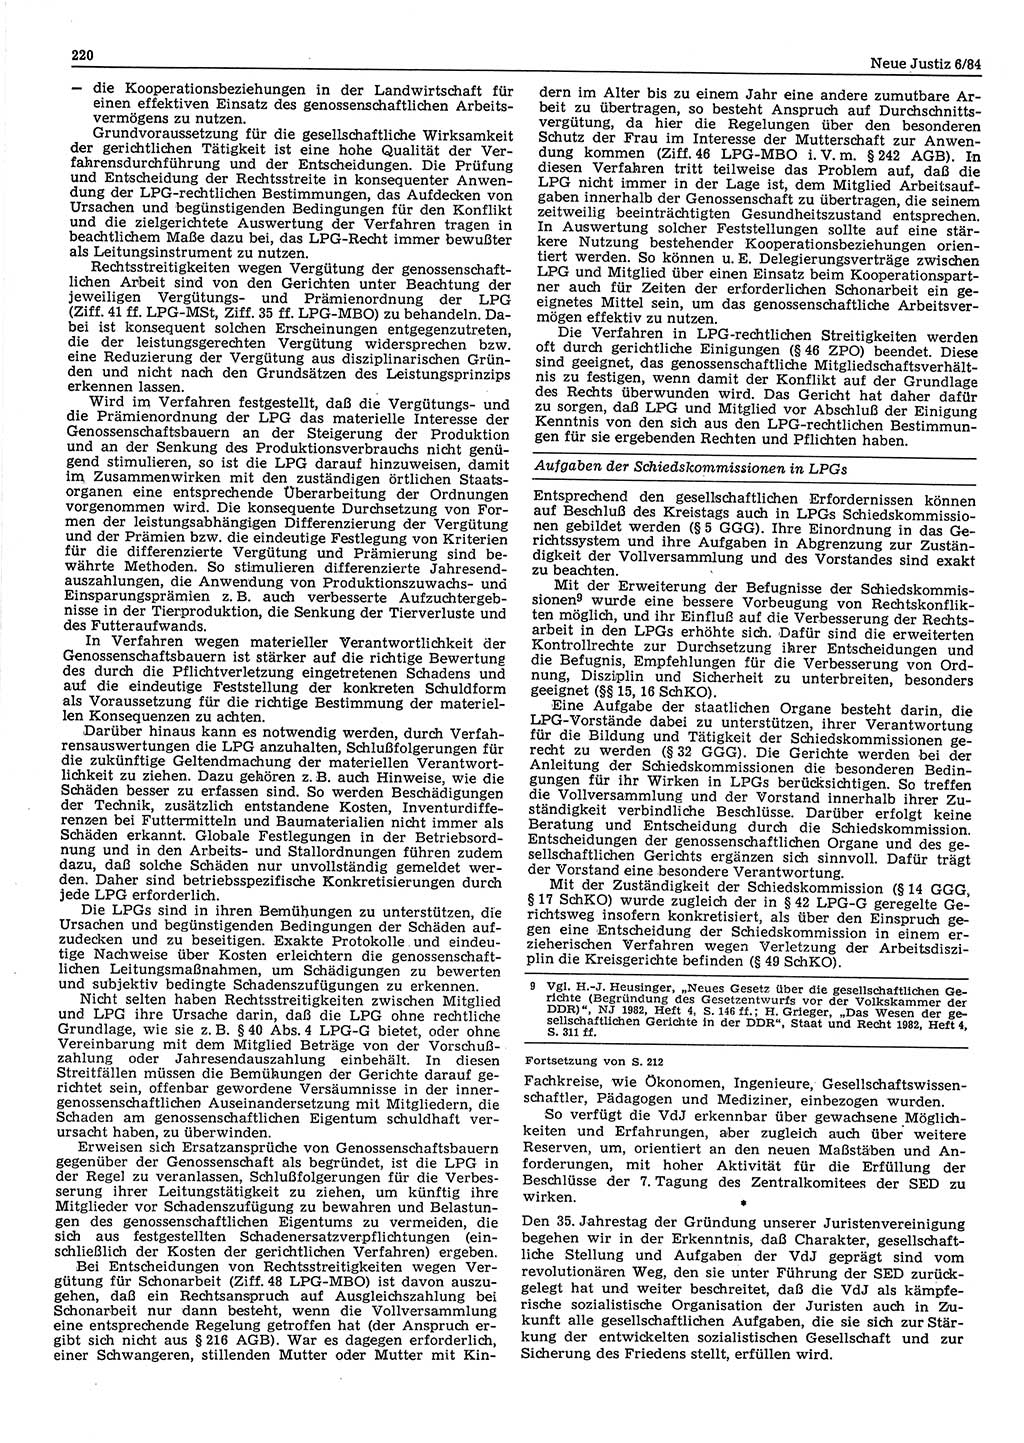 Neue Justiz (NJ), Zeitschrift für sozialistisches Recht und Gesetzlichkeit [Deutsche Demokratische Republik (DDR)], 38. Jahrgang 1984, Seite 220 (NJ DDR 1984, S. 220)